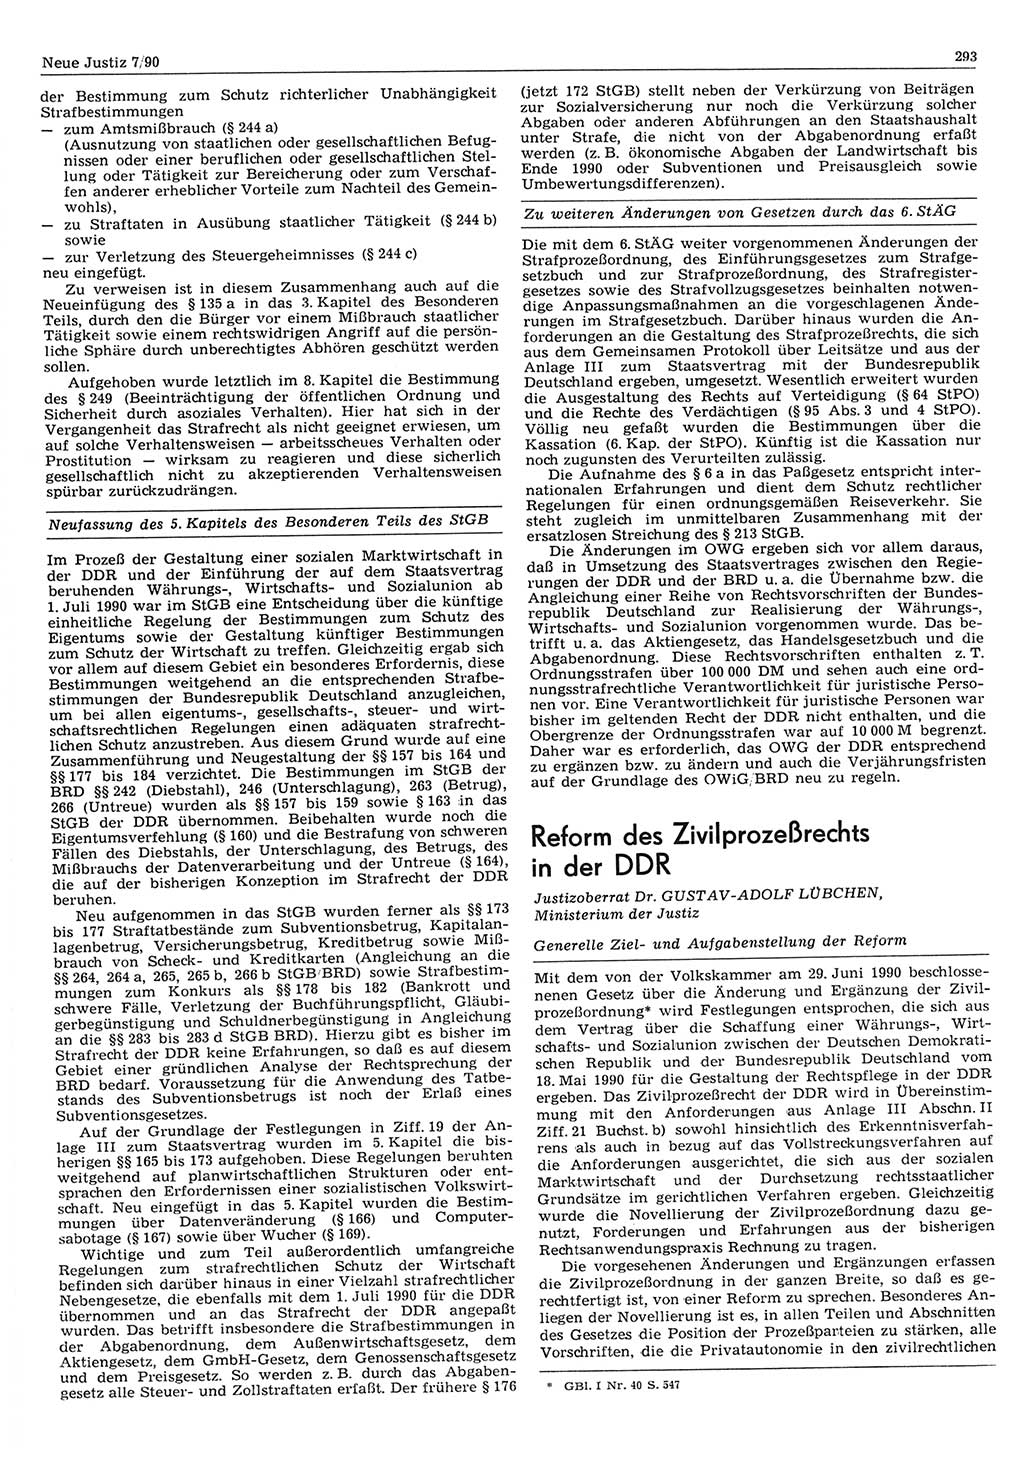 Neue Justiz (NJ), Zeitschrift für Rechtsetzung und Rechtsanwendung [Deutsche Demokratische Republik (DDR)], 44. Jahrgang 1990, Seite 293 (NJ DDR 1990, S. 293)